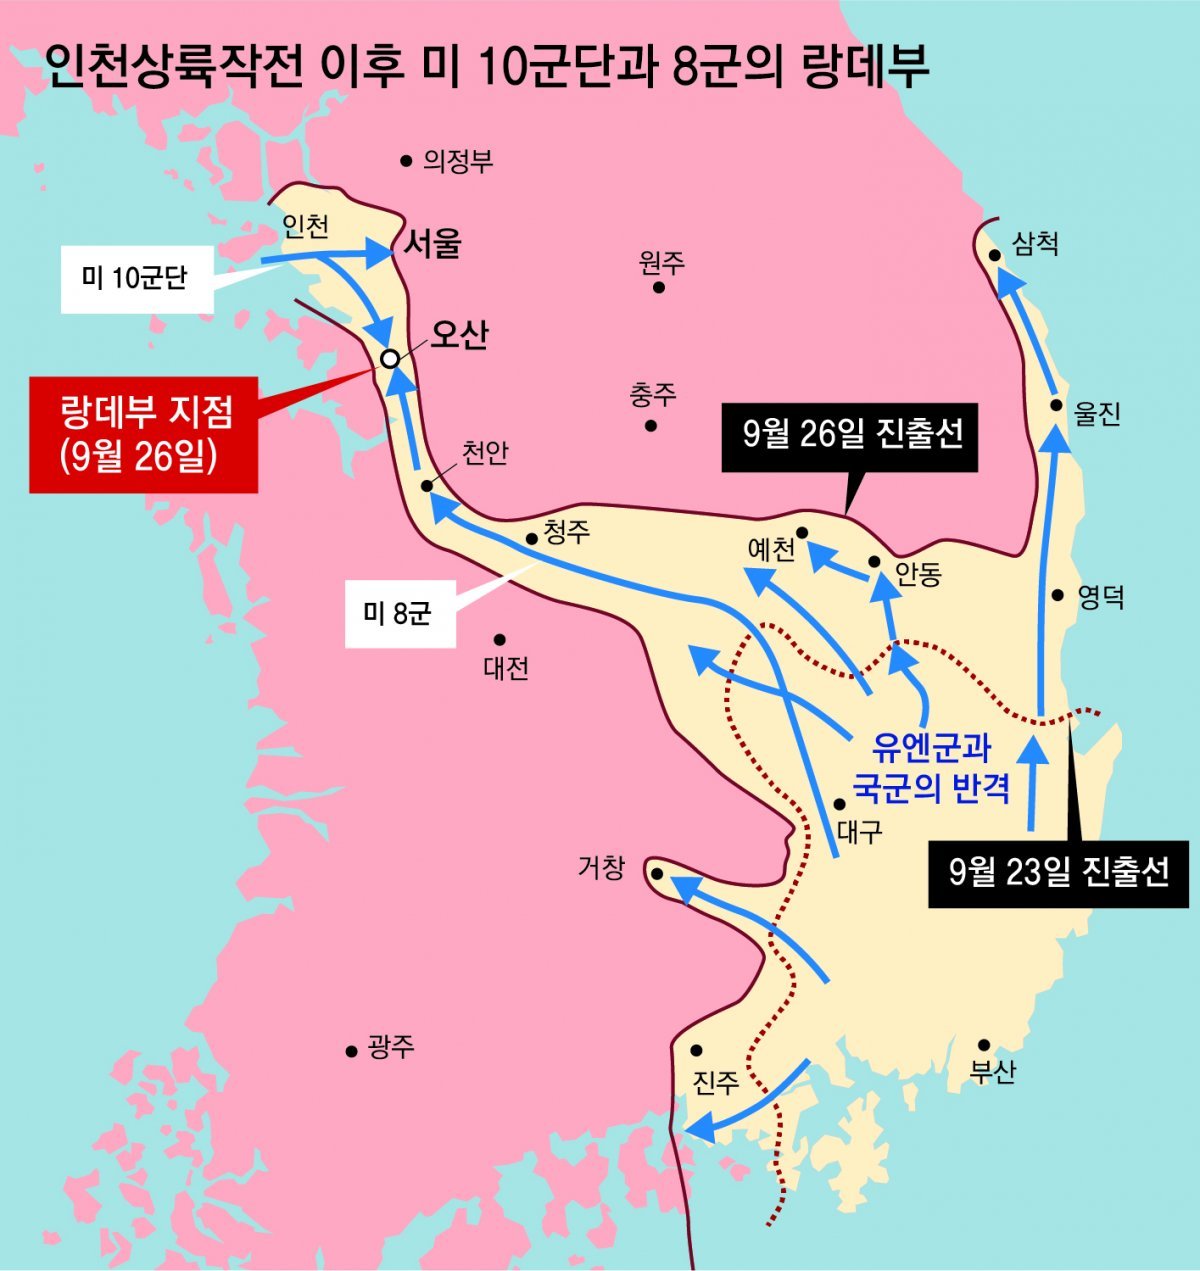 인천상륙작전의 미 제 10군단과 낙동강 전선에서 반격해 올라온 미 8군이 경기도 오산에서 9월 26일 합류했다.